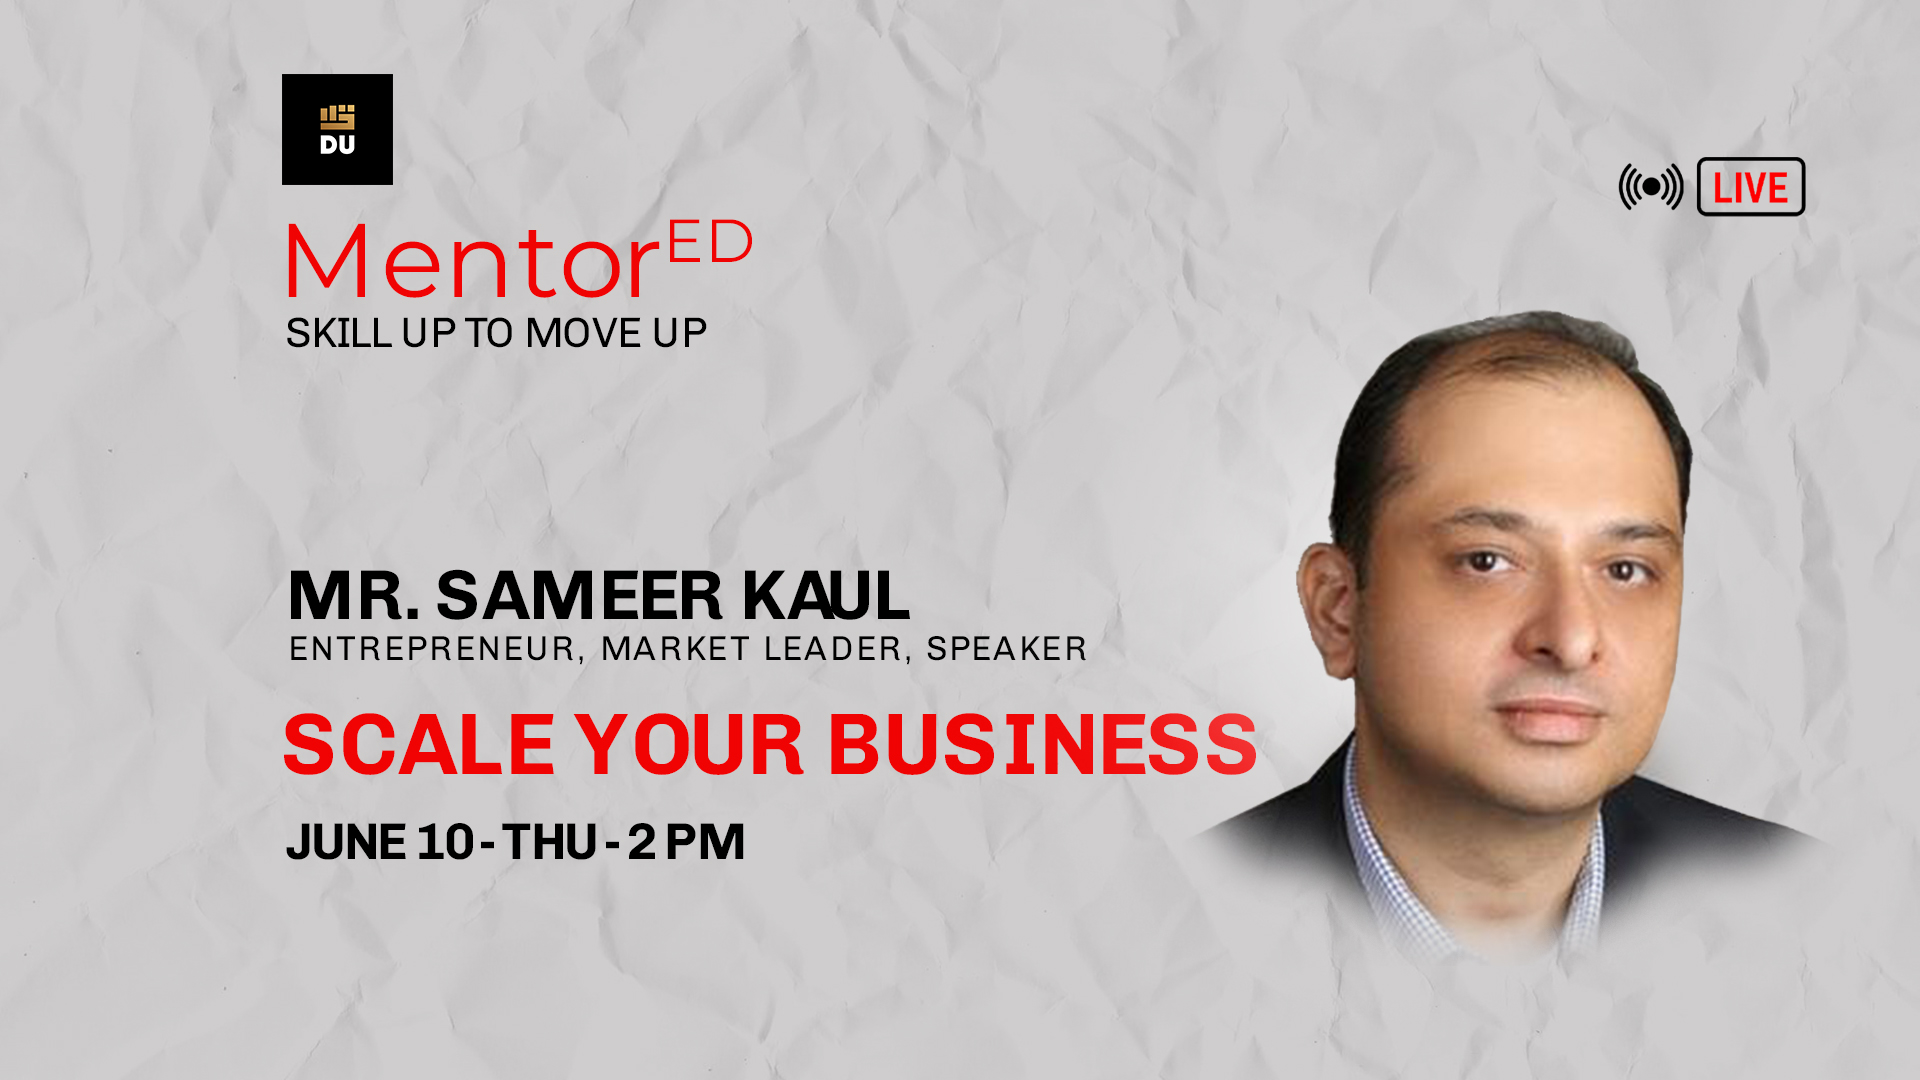 Get MentorEd by Sameer Kaul